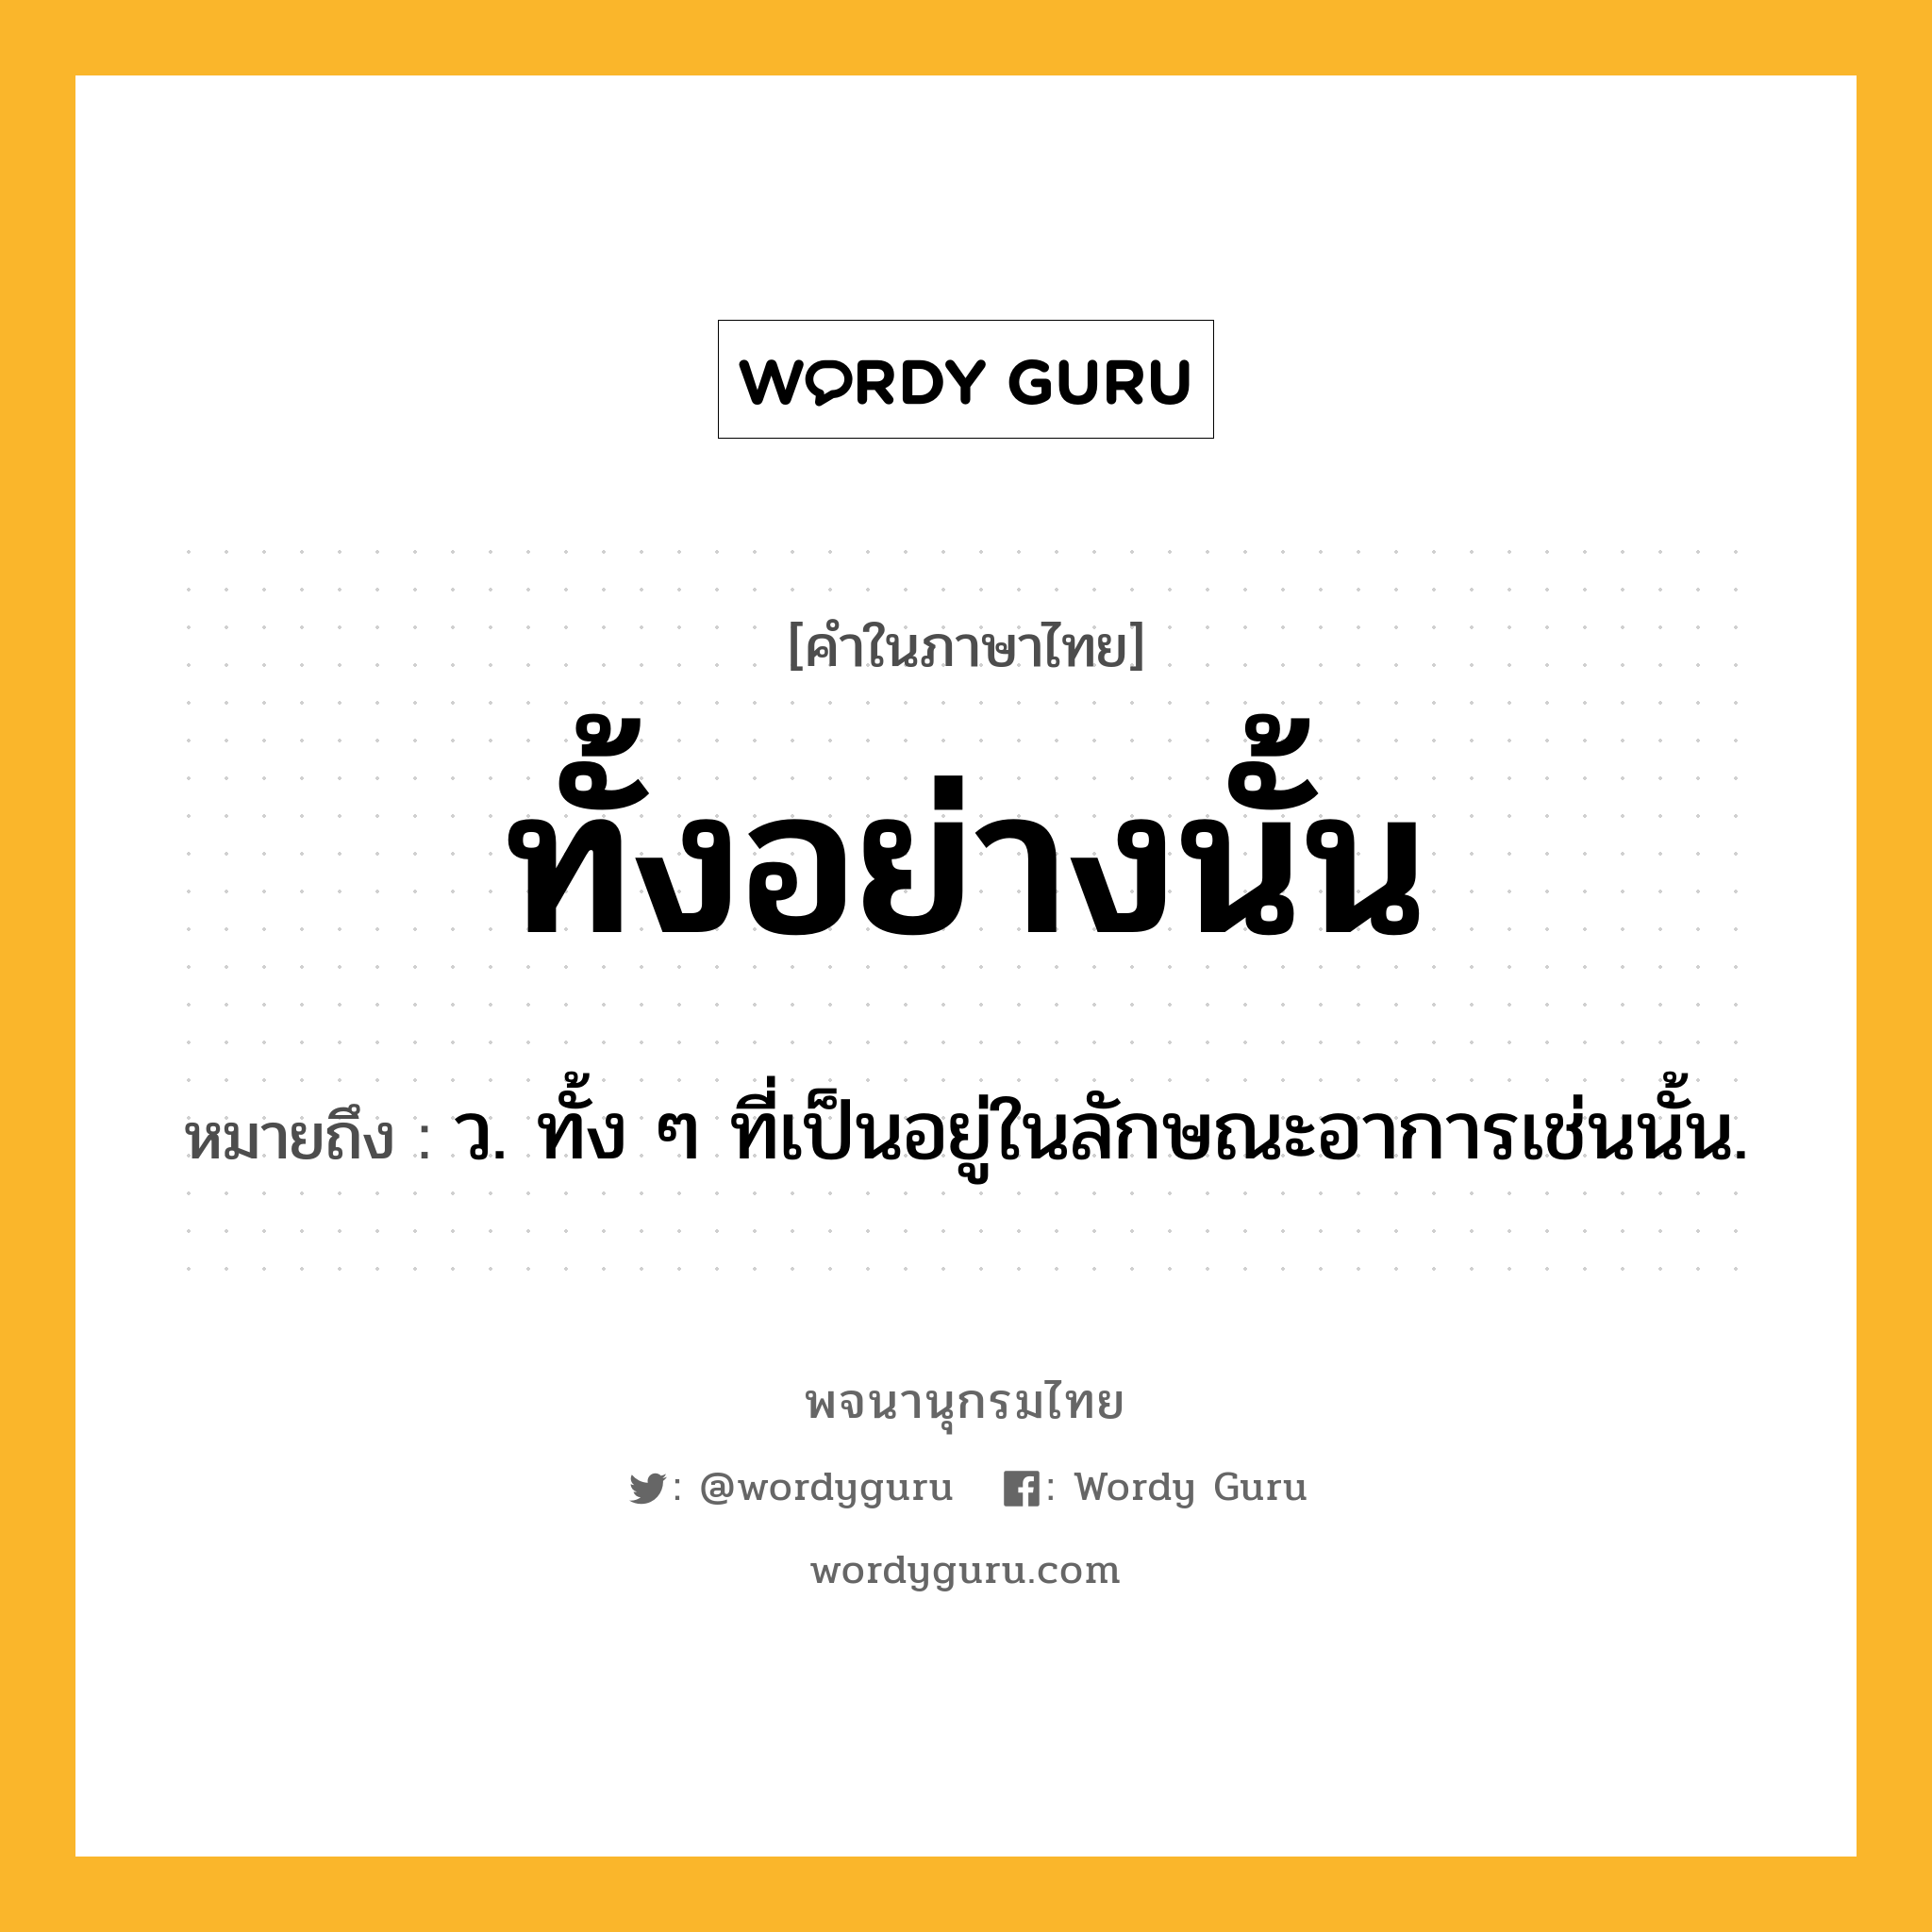 ทั้งอย่างนั้น หมายถึงอะไร?, คำในภาษาไทย ทั้งอย่างนั้น หมายถึง ว. ทั้ง ๆ ที่เป็นอยู่ในลักษณะอาการเช่นนั้น.